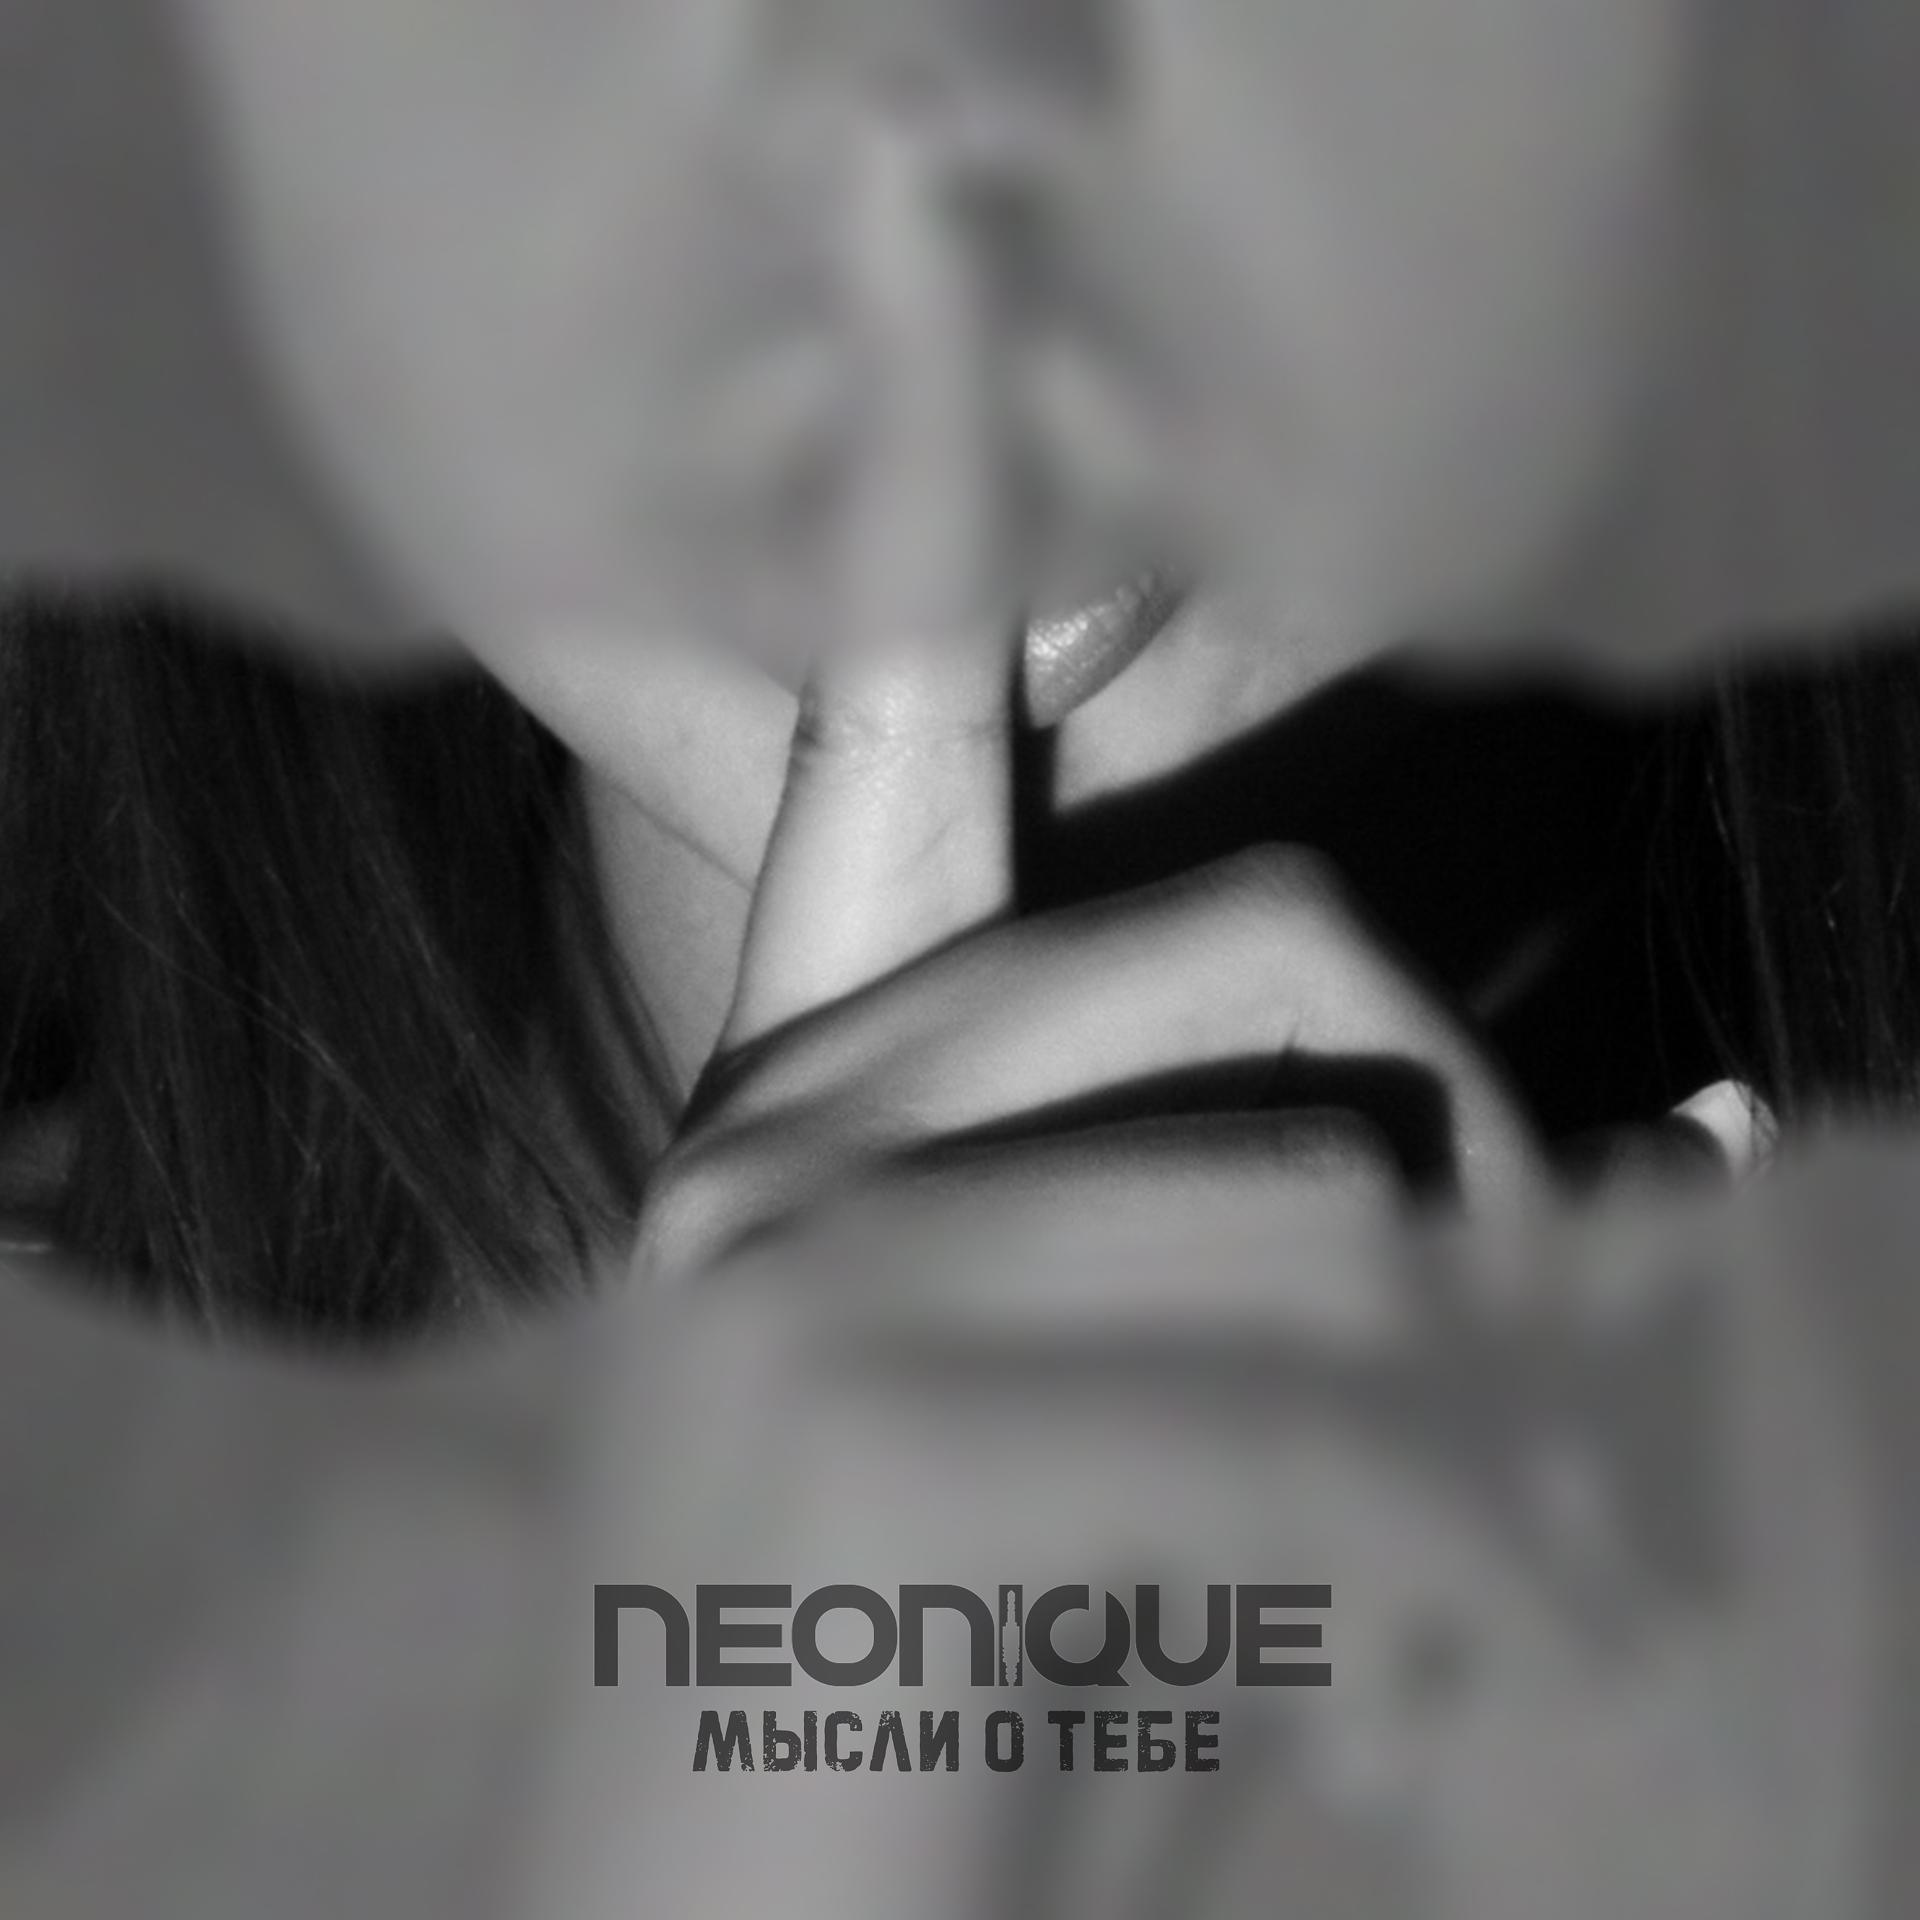 Постер к треку Neonique - Мысли о тебе